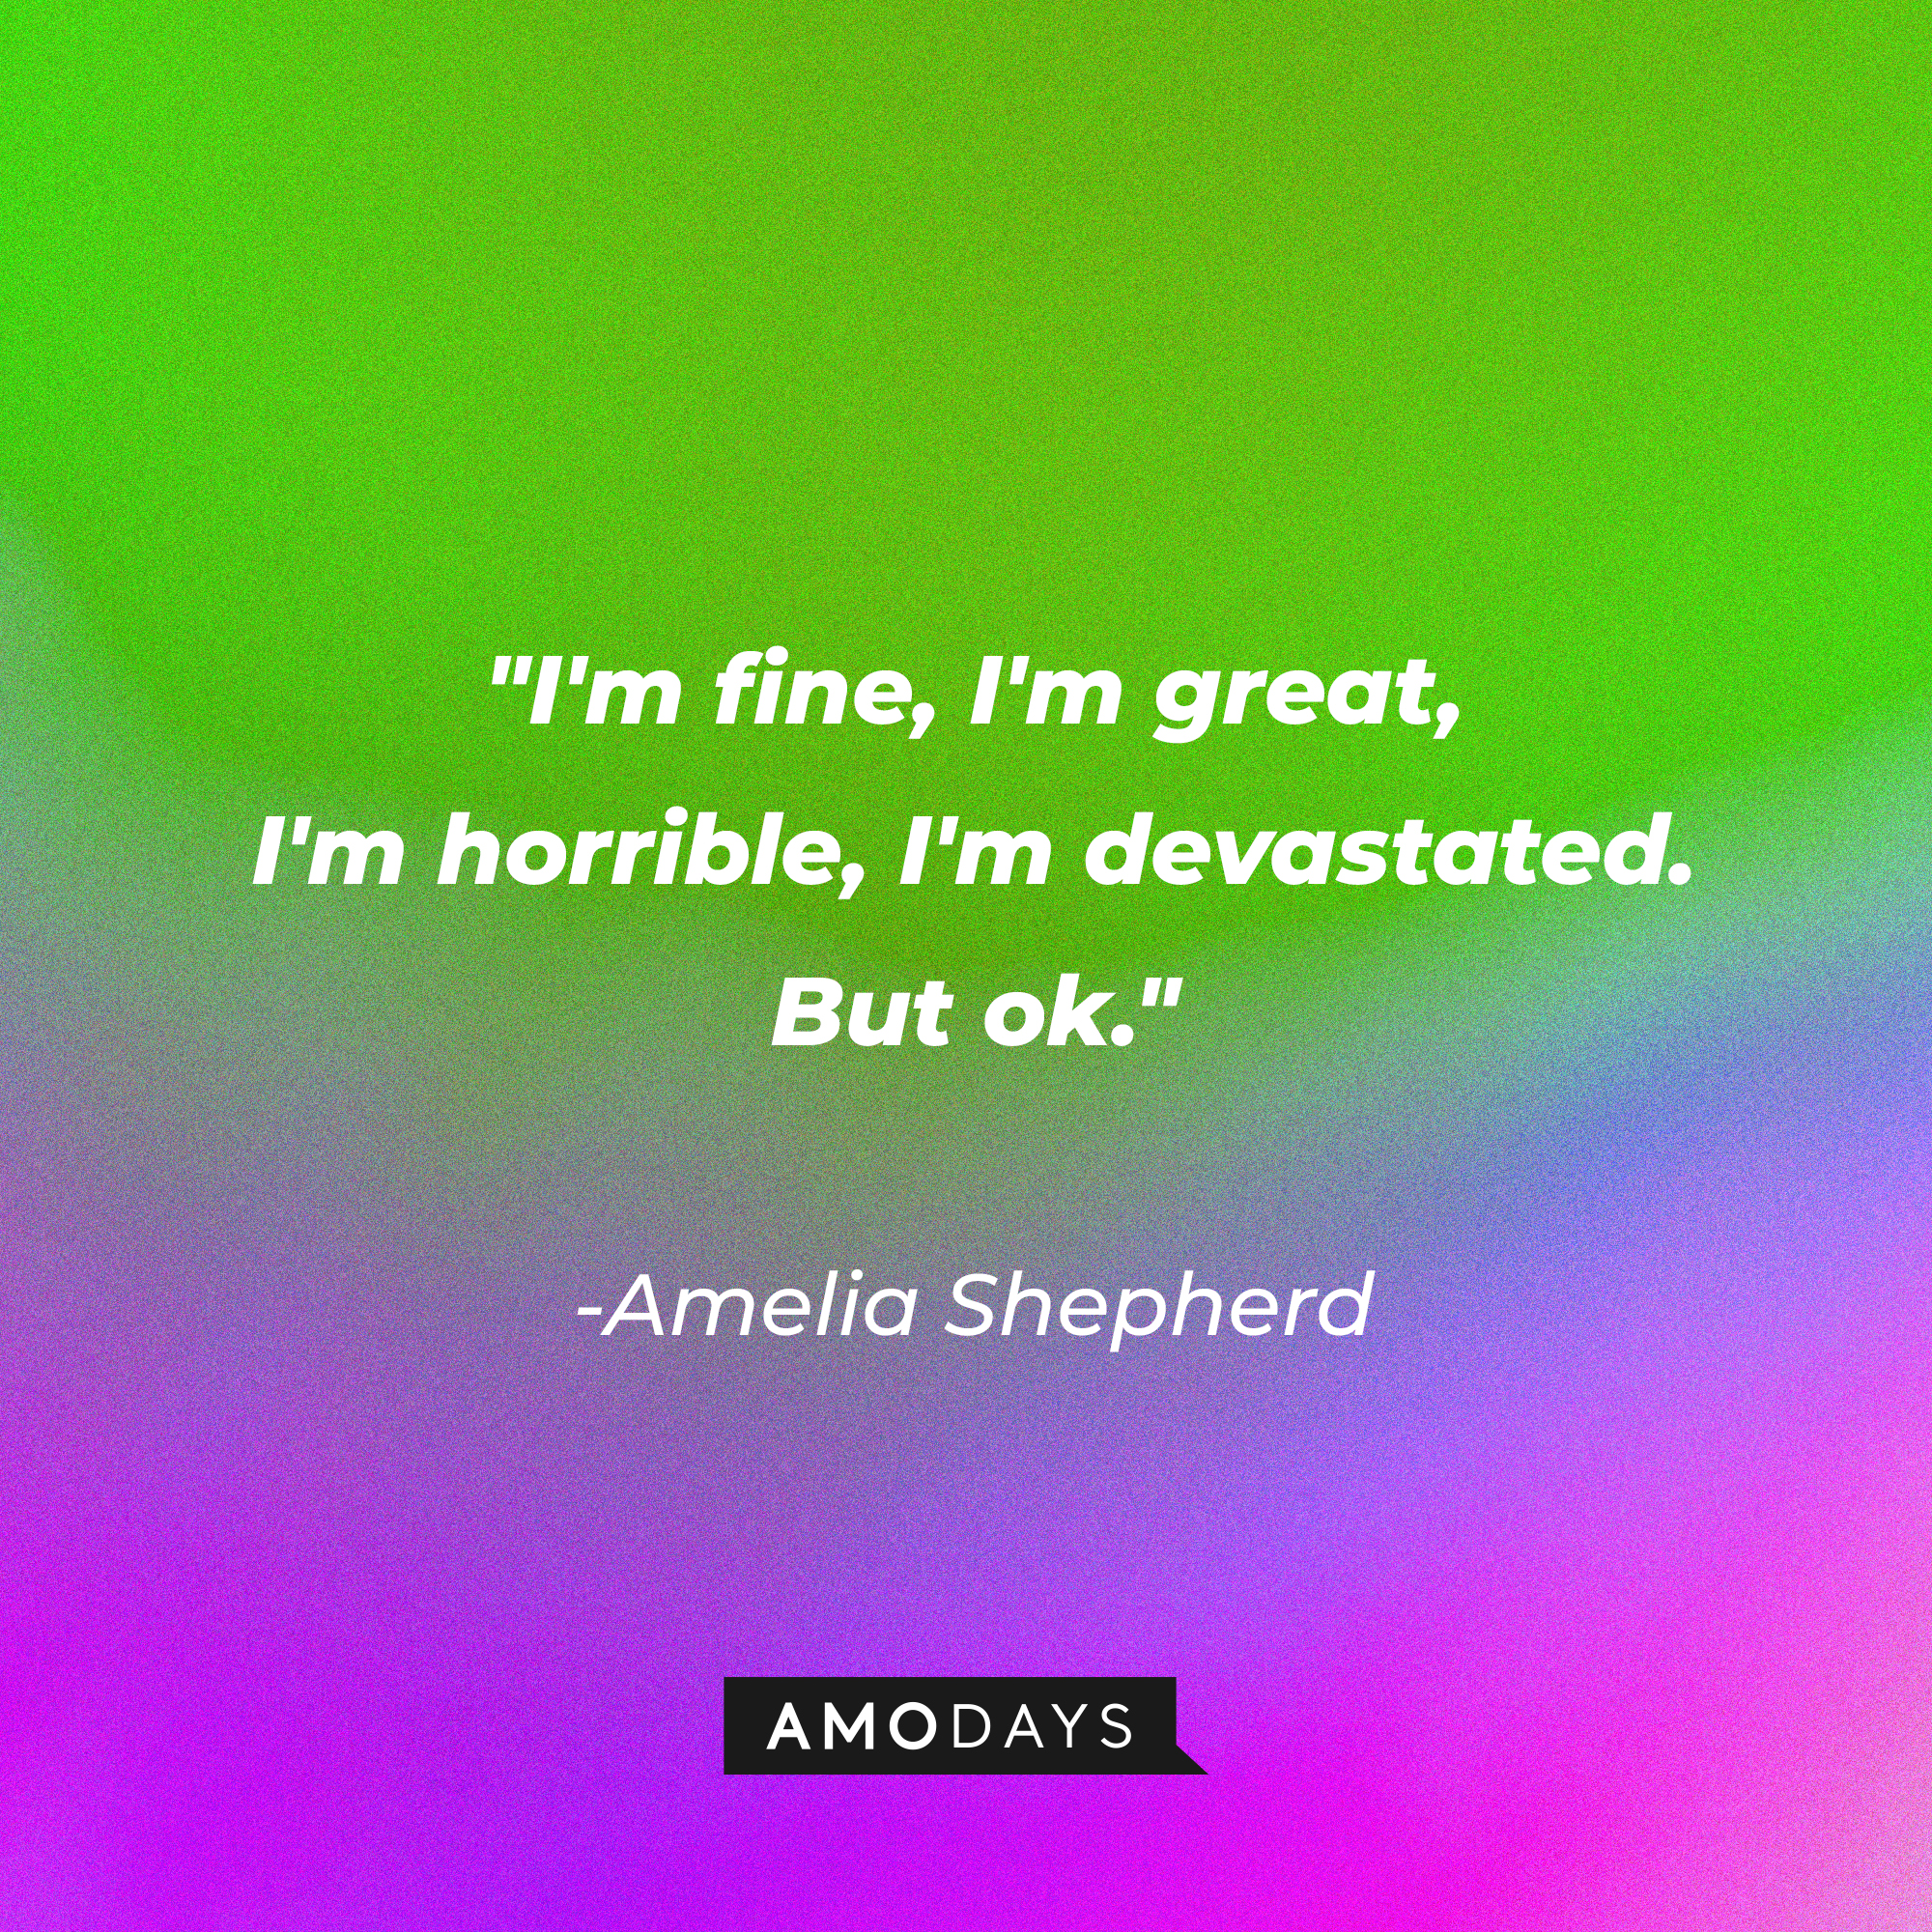 Amelia Shepherd's quote: "I'm fine, I'm great, I'm horrible, I'm devastated. But ok." | Source: AmoDays